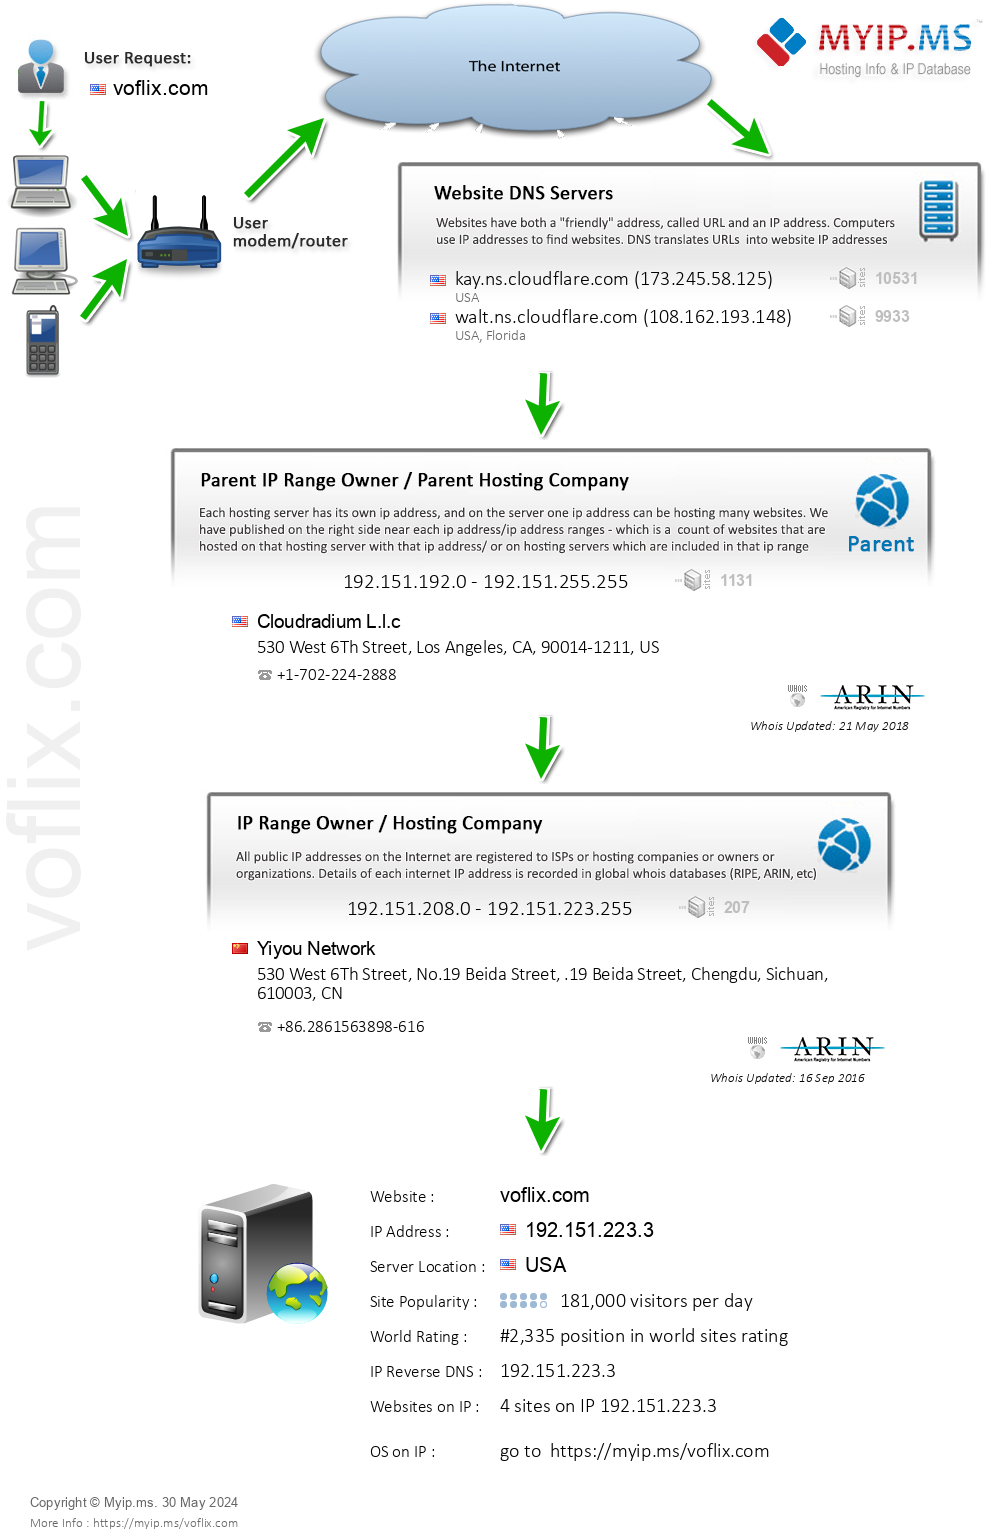 Voflix.com - Website Hosting Visual IP Diagram